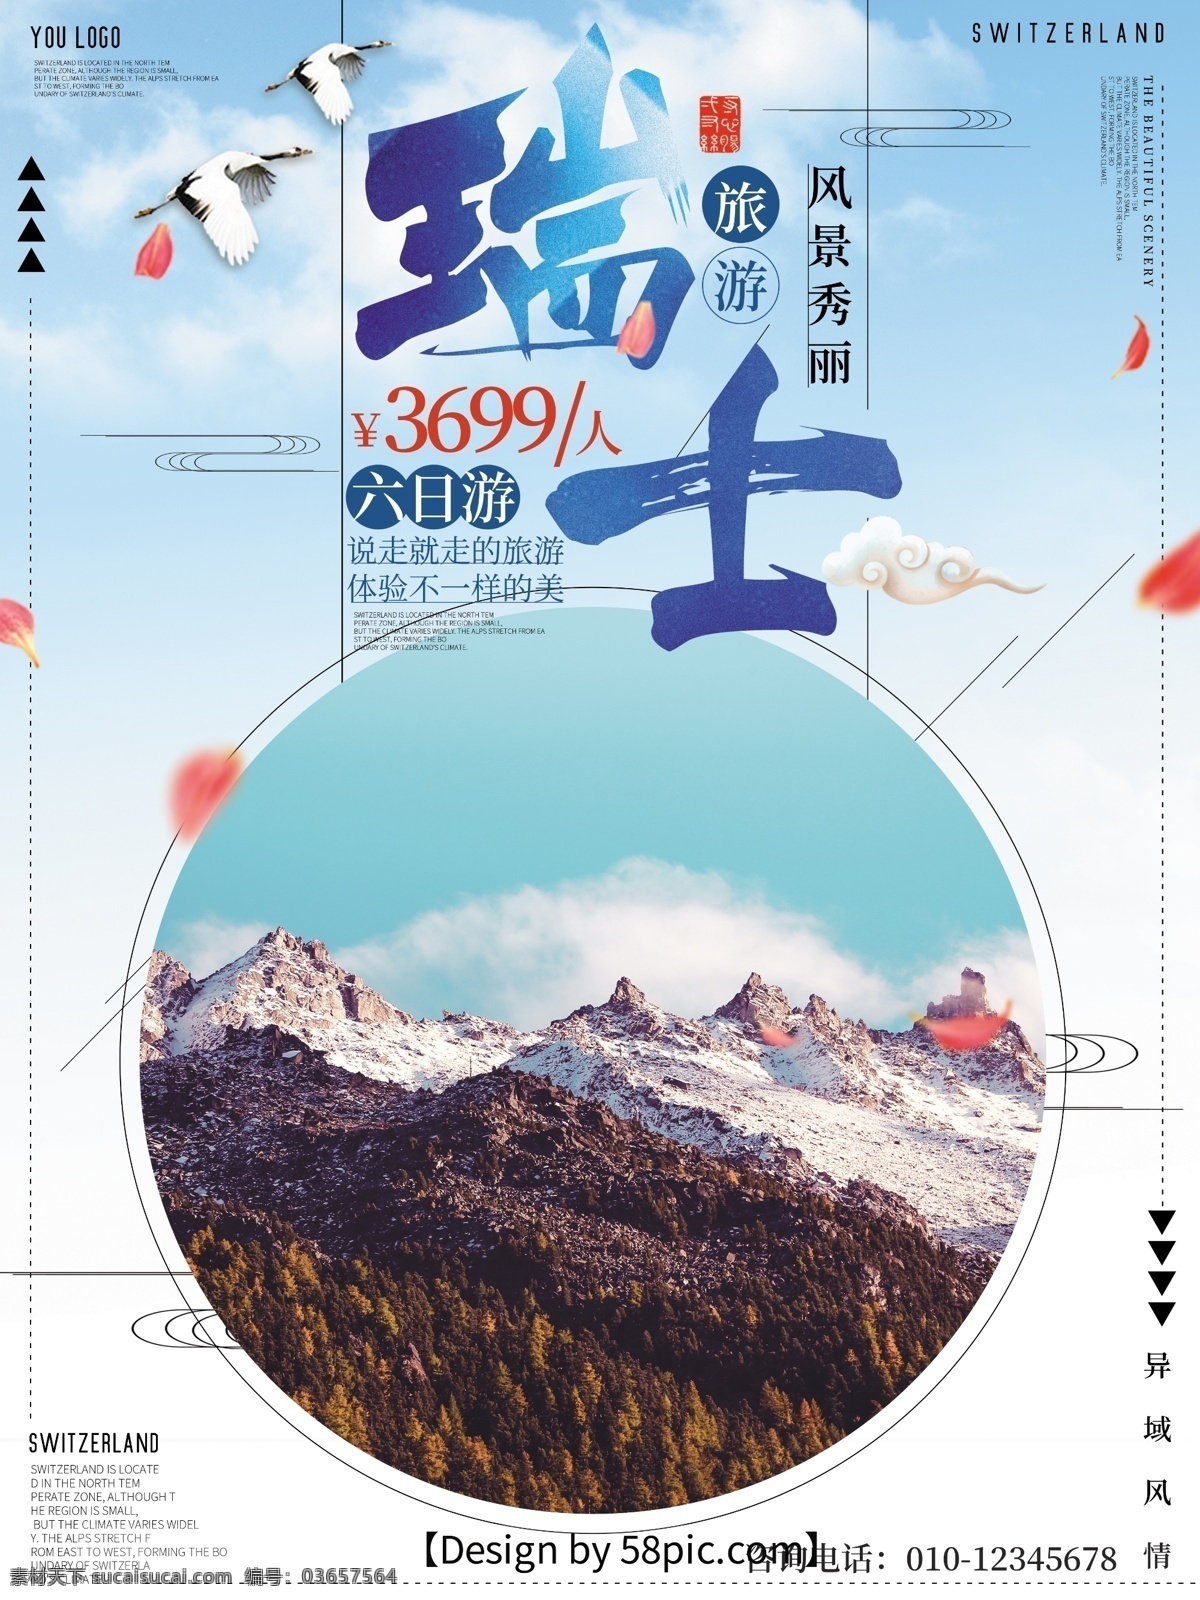 瑞士 浅蓝色 促销 旅游 海报 促销旅游 冬季旅游海报 花瓣 旅游海报 瑞士海报 外国旅游海报